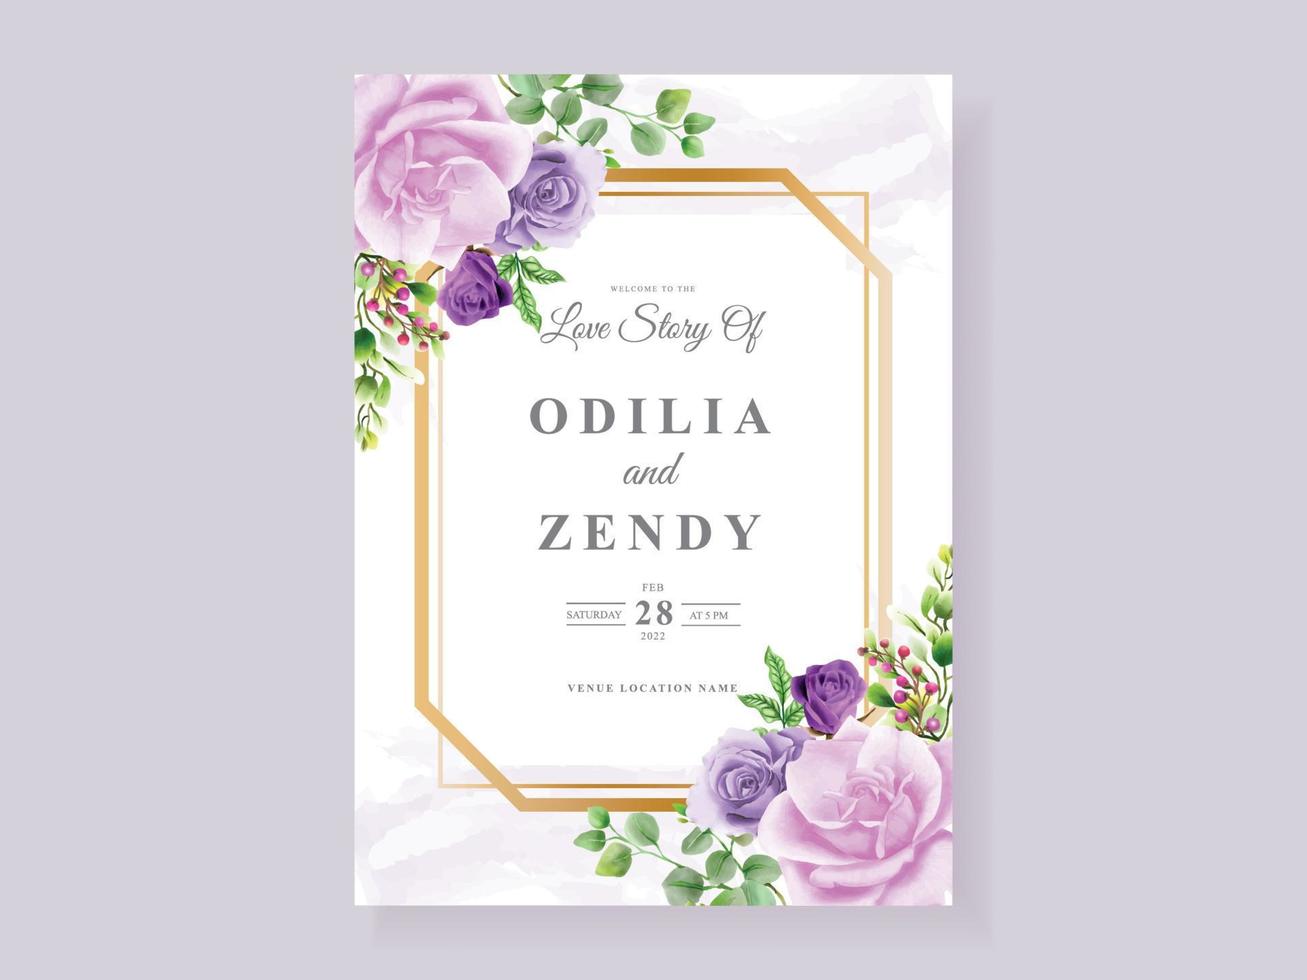 beau modèle de carte d'invitation de mariage floral violet vecteur